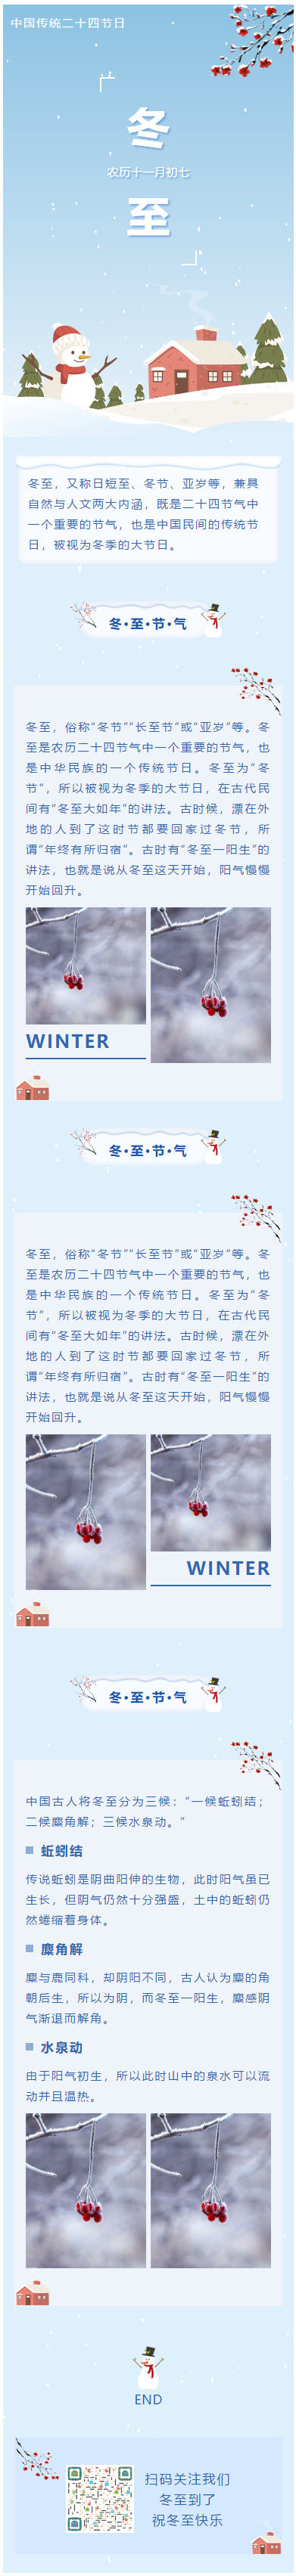 冬至中国传统二十四节日